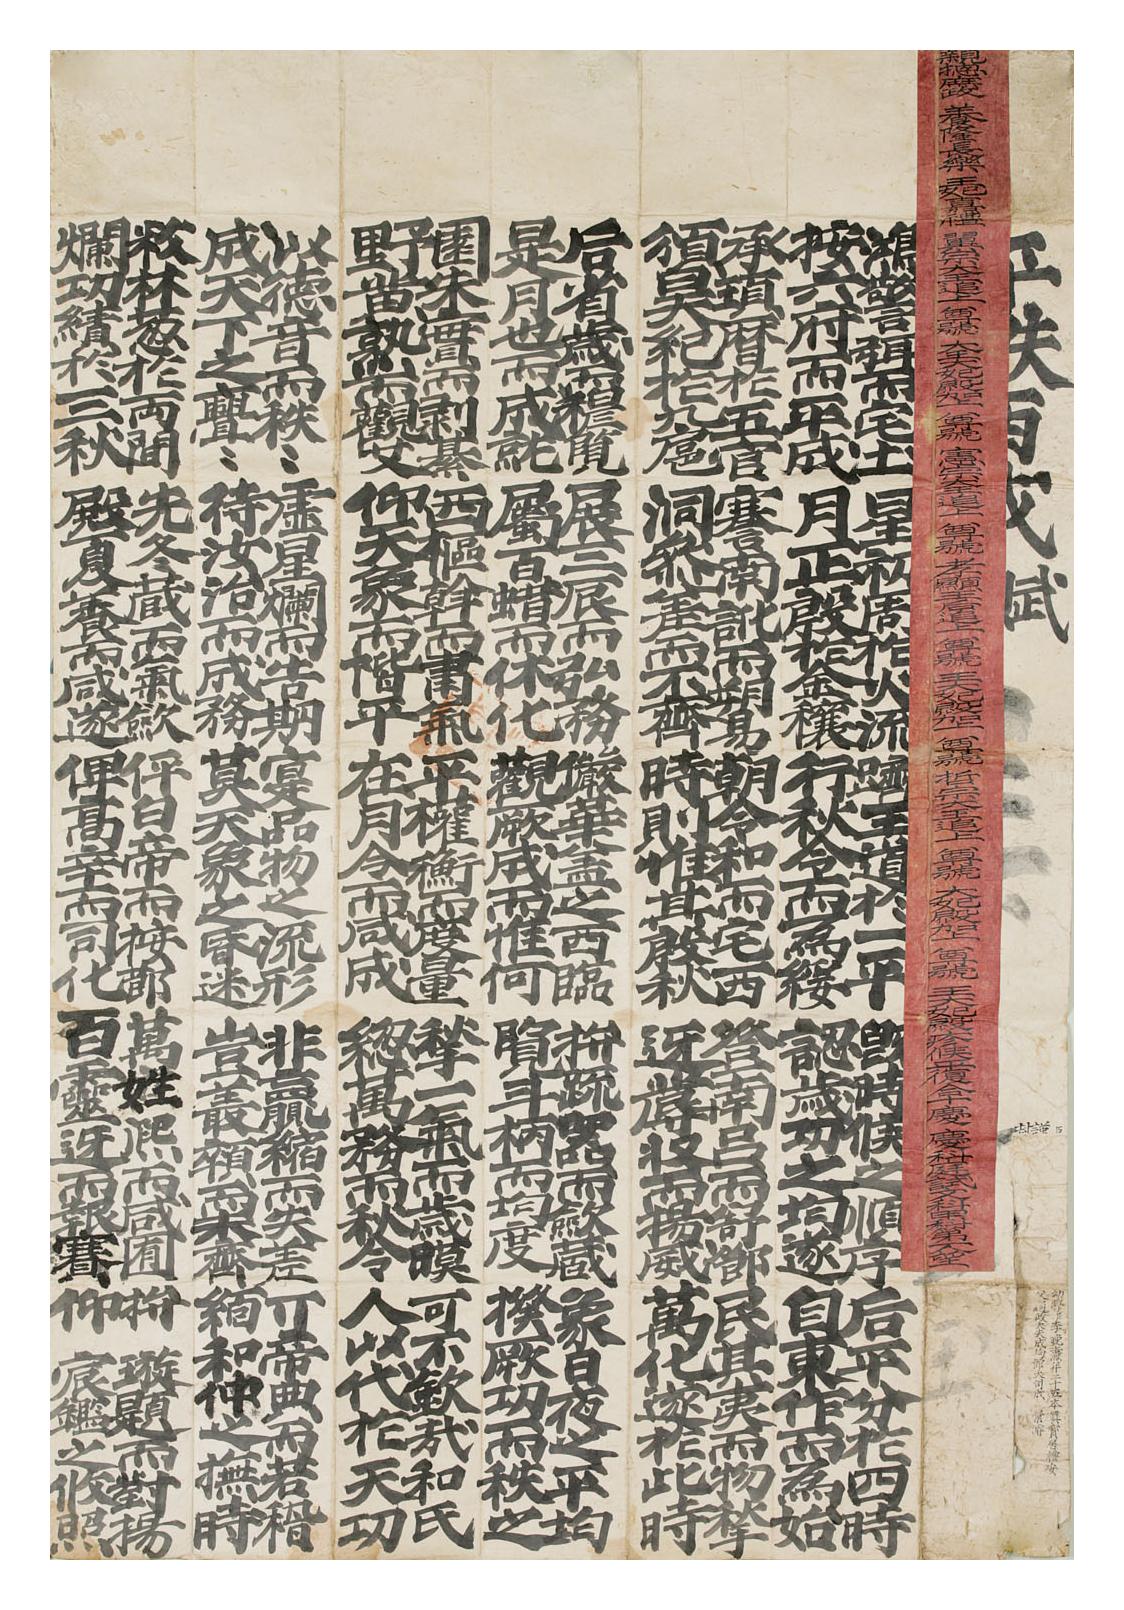 이만도(李晩燾)가 1866년에 작성한 문과급제 시권